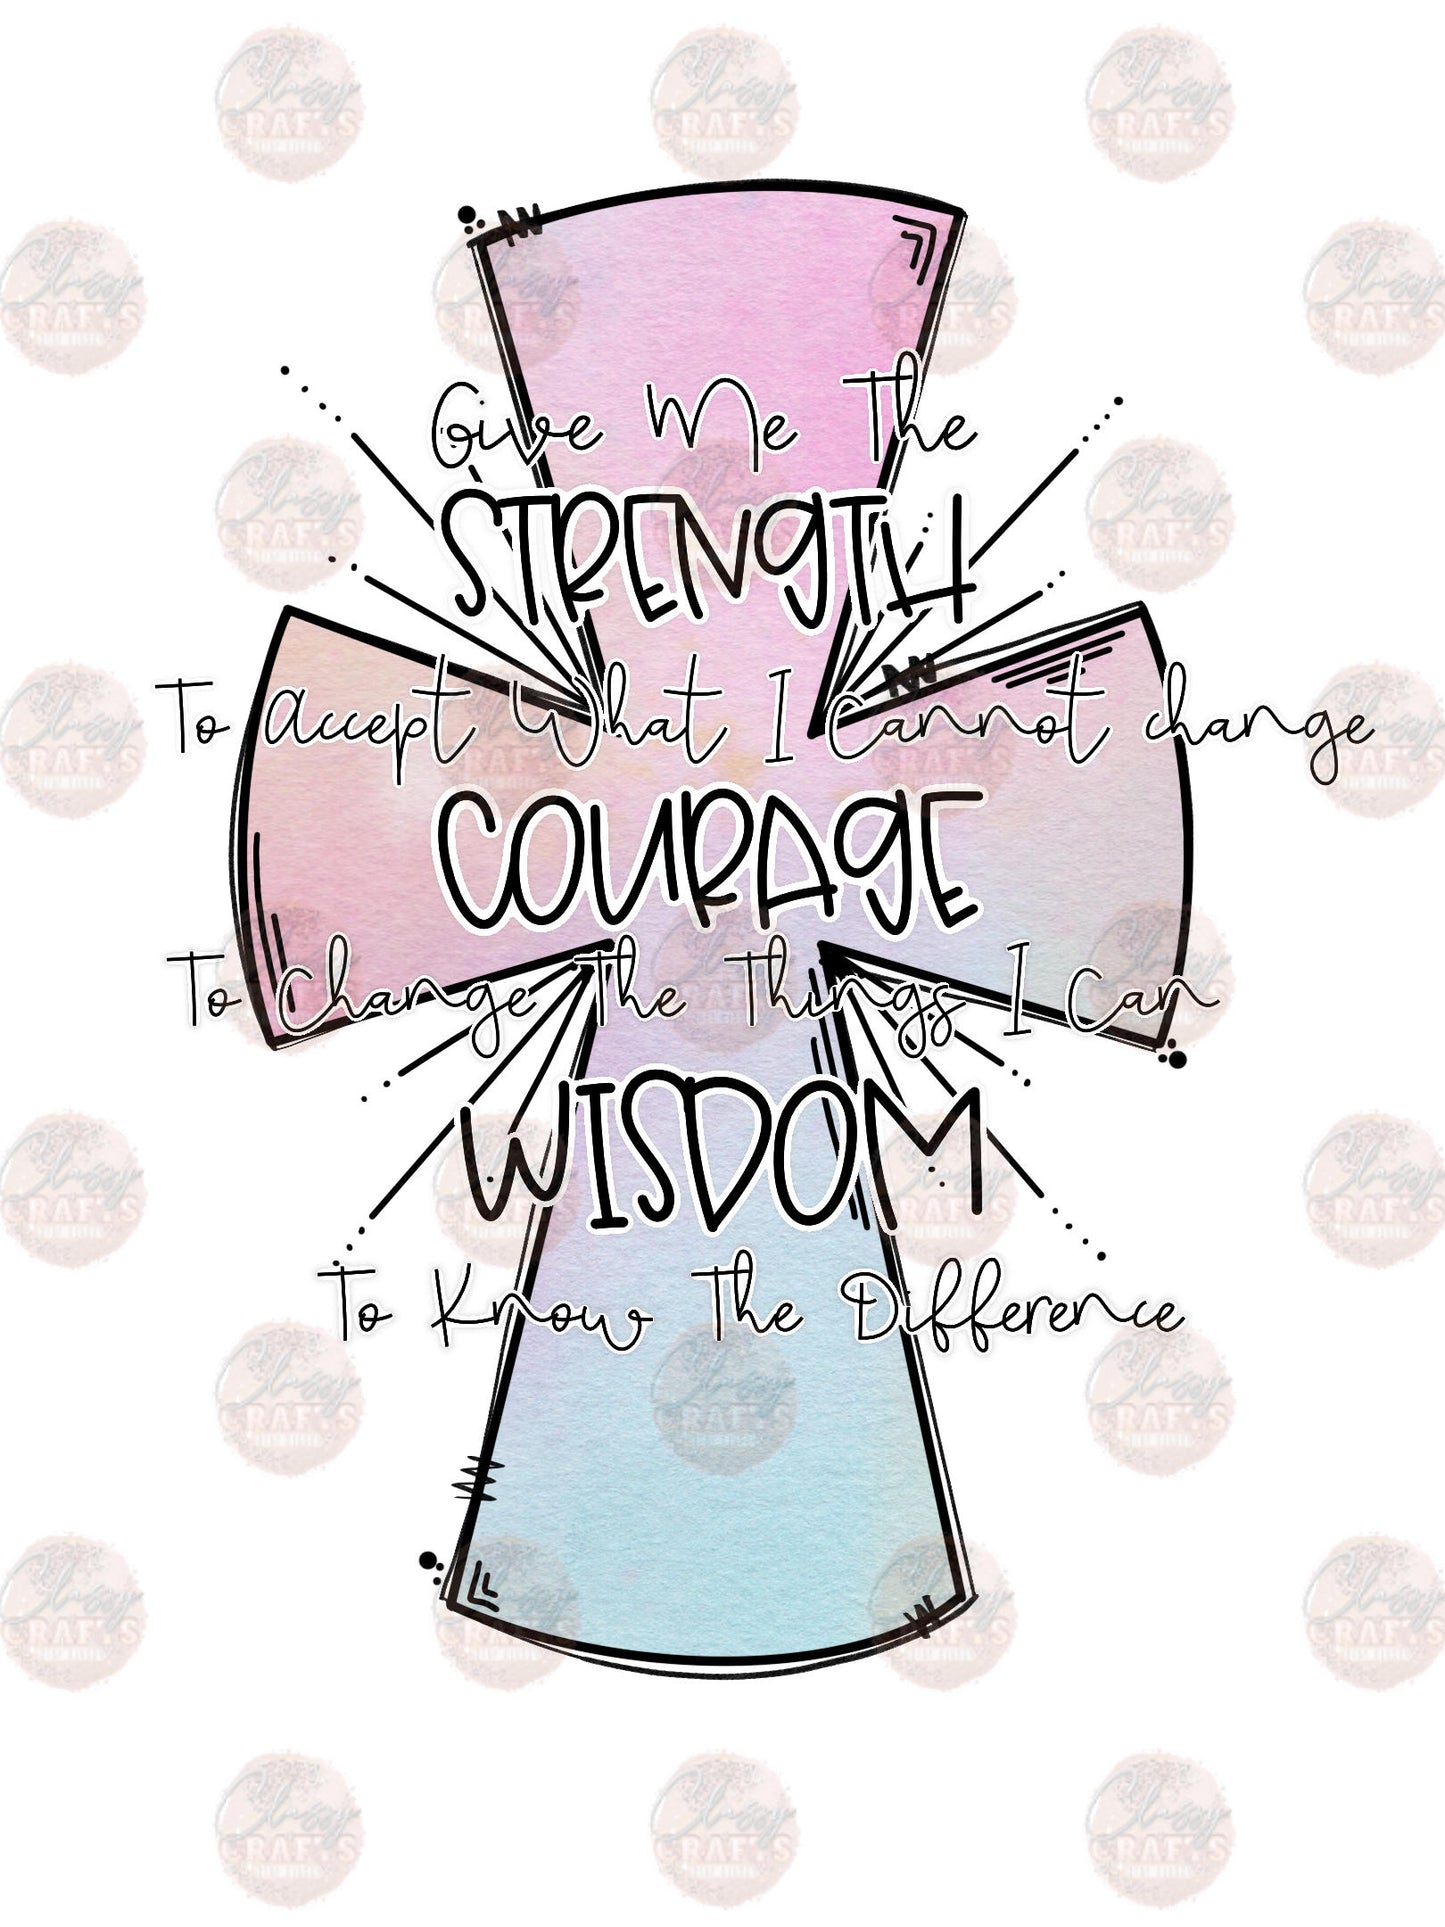 Strength Courage Wisdom Transfer